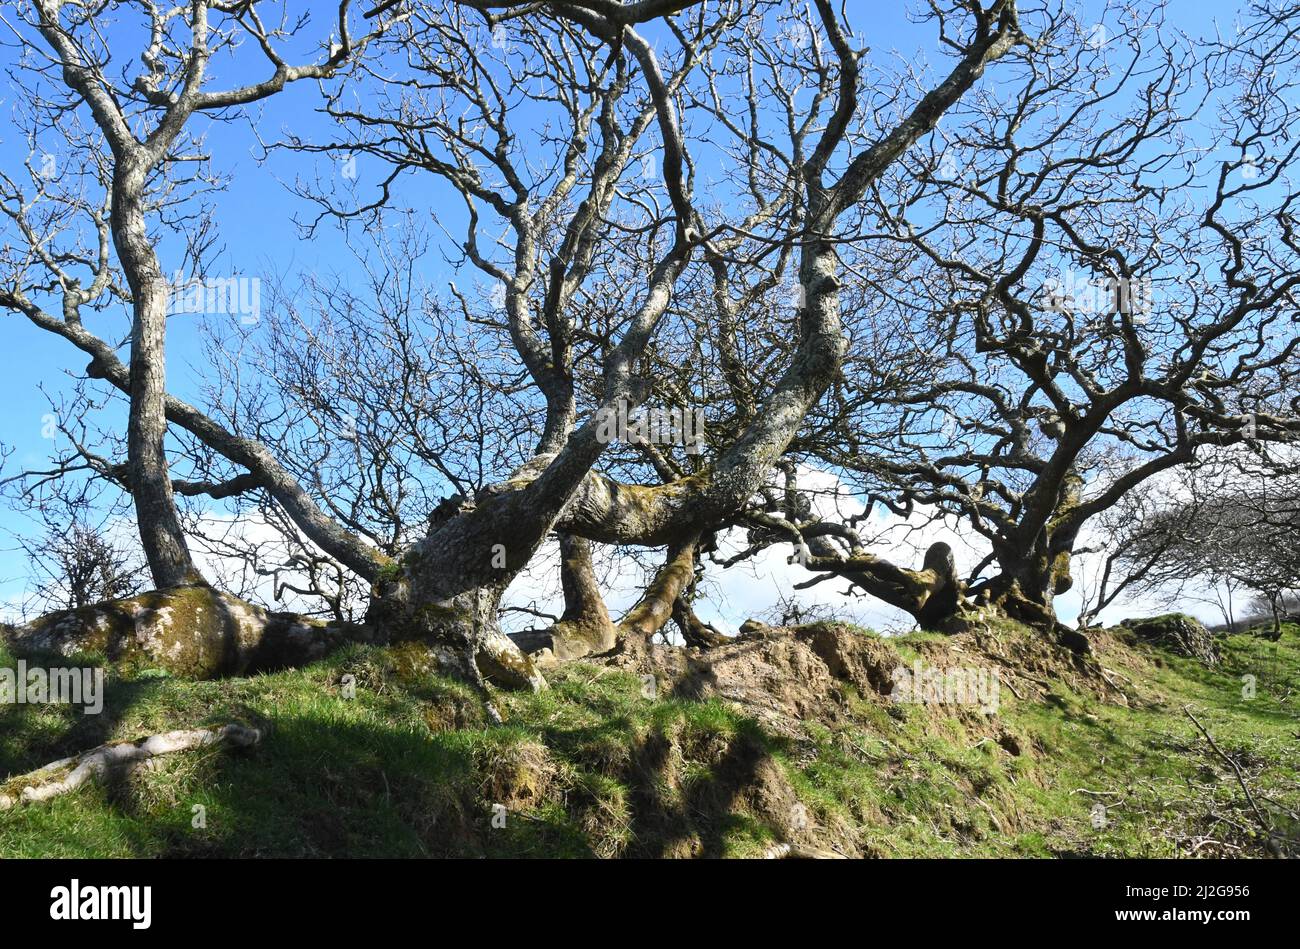 Raíces encorvadas y retorcidas, tronco y ramas cubiertas de musgo de un roble que bordea una ruta de herradura en un soleado día de primavera bajo un cielo azul brillante en Maíz Foto de stock